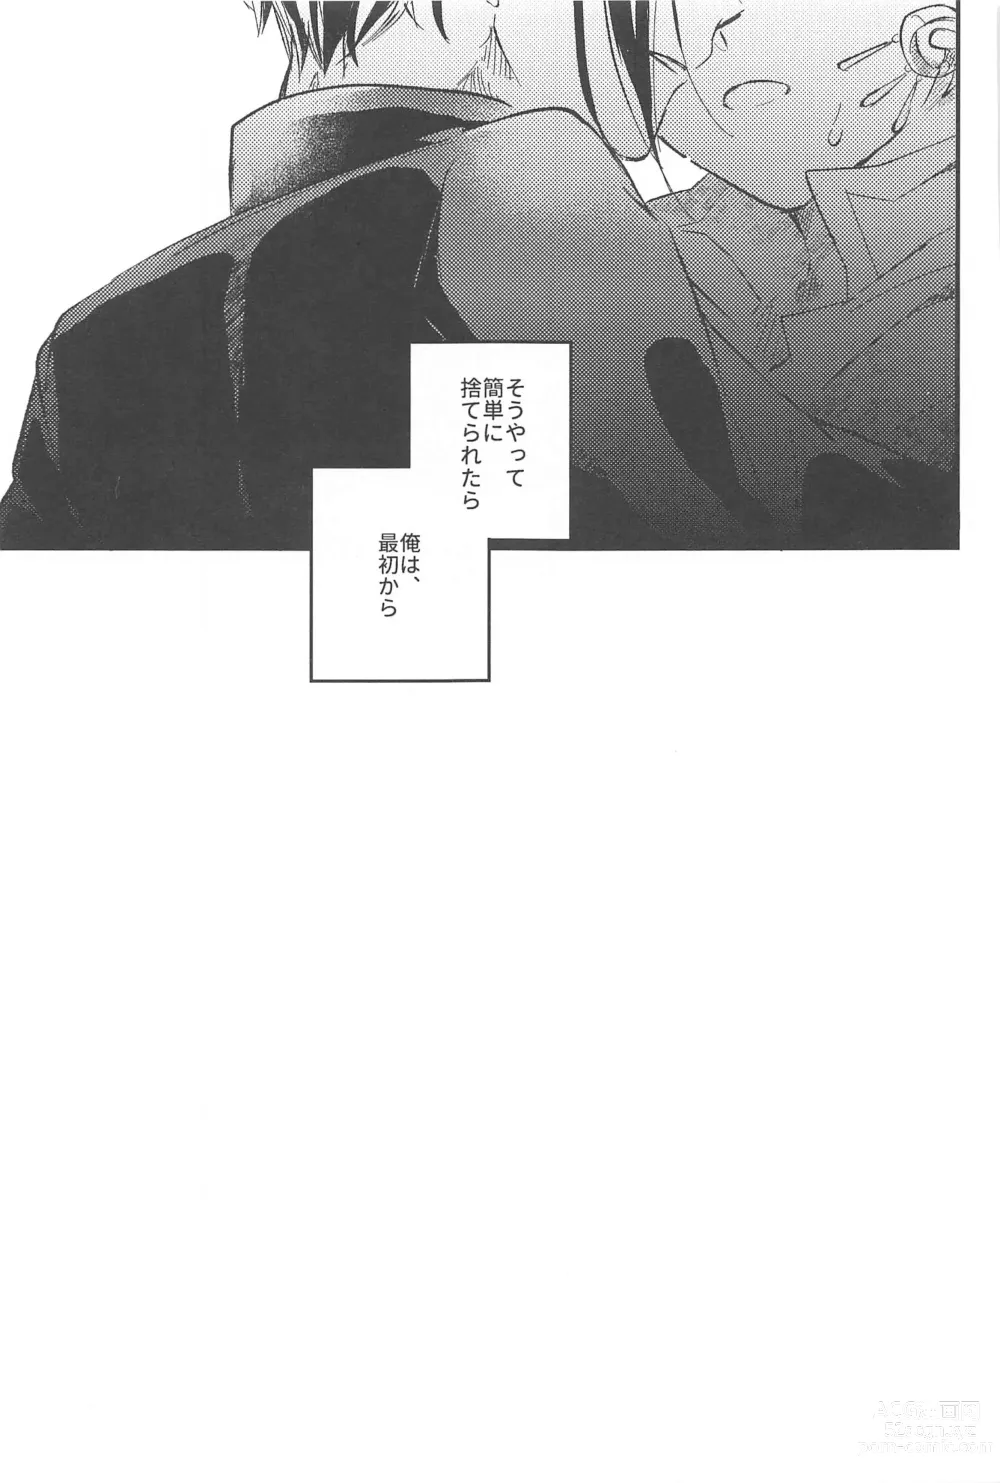 Page 59 of doujinshi Kantan dakara Muzukashii